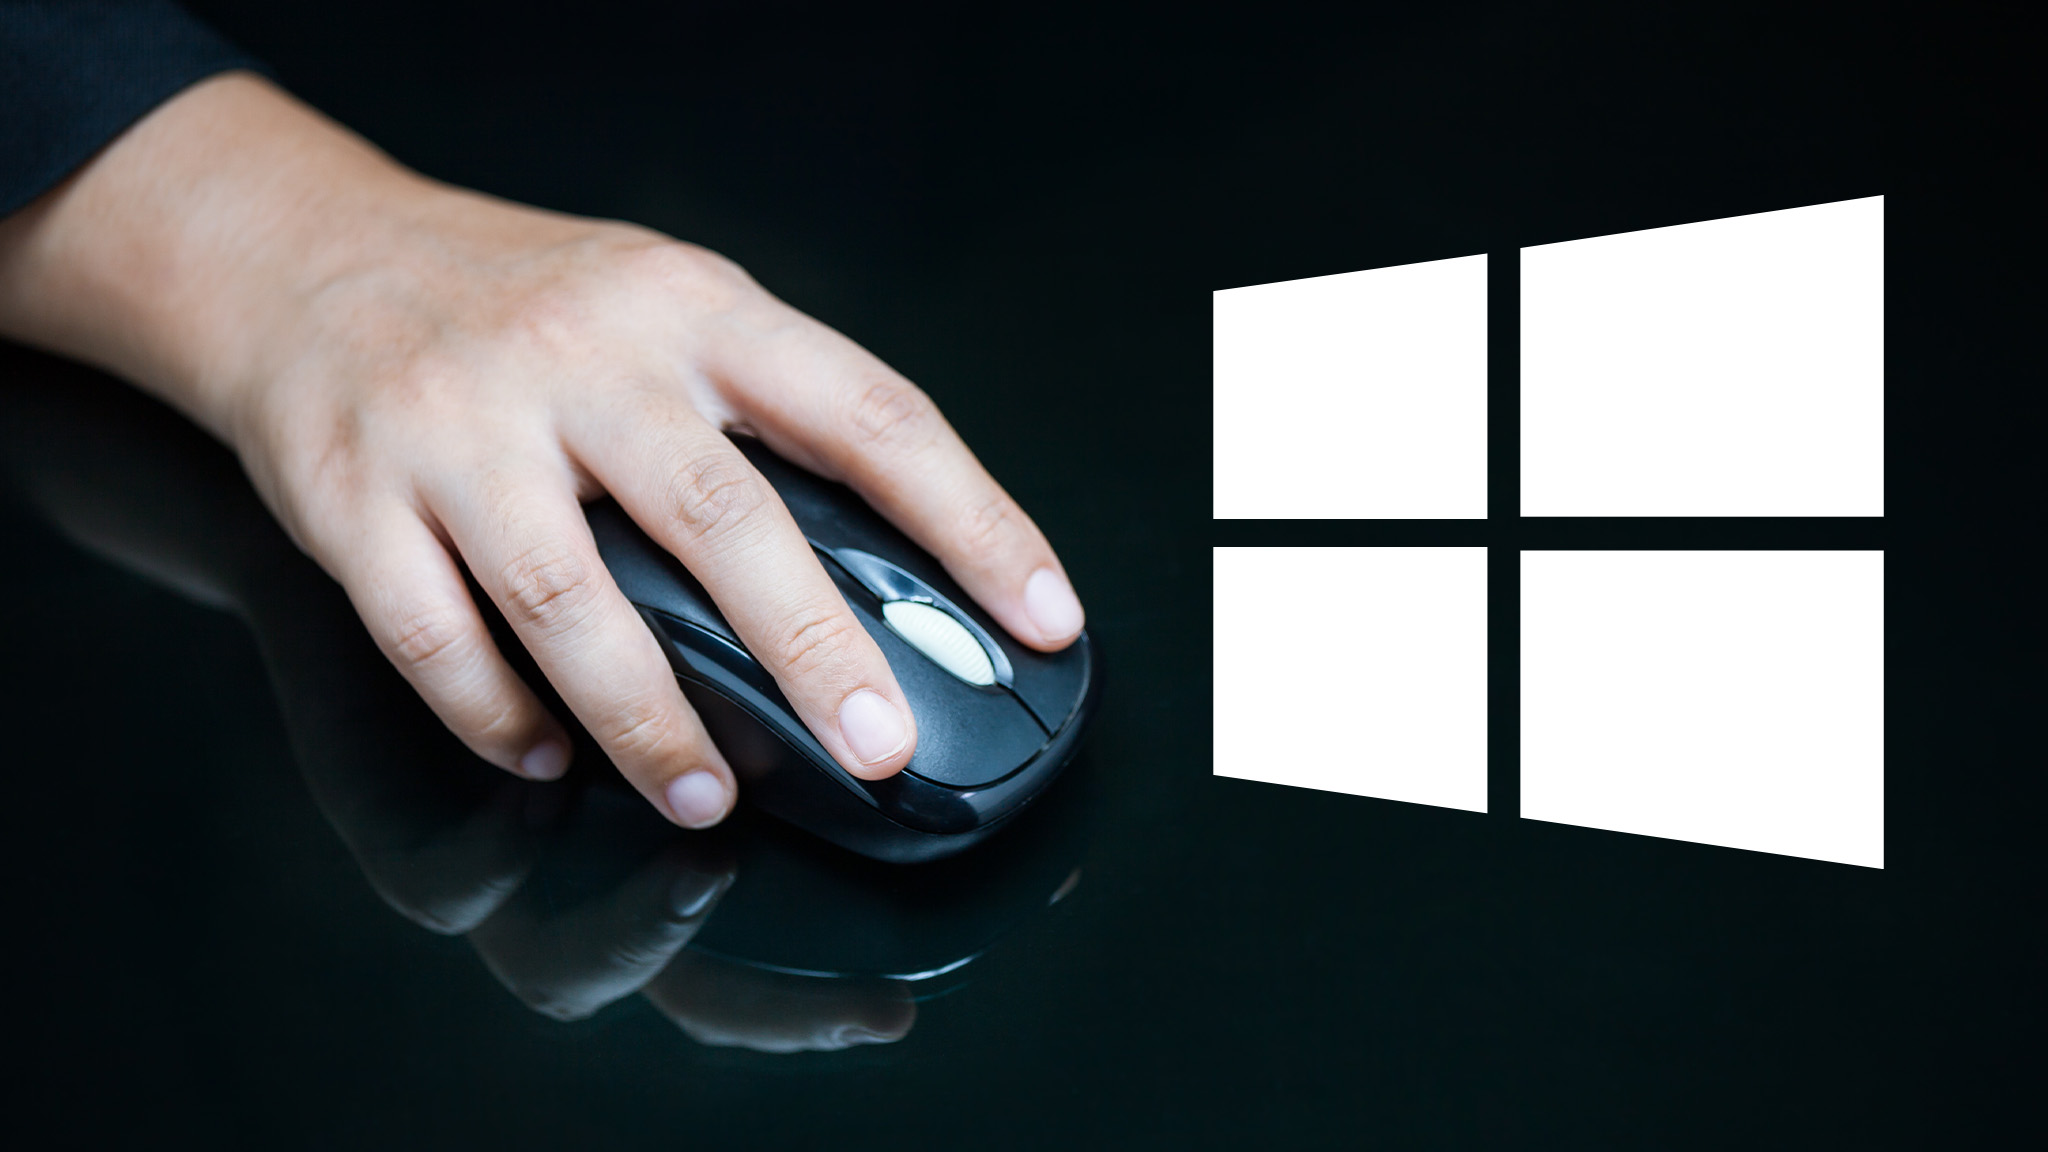 Maus schneller machen, konfigurieren und tunen: Windows-Tipps - COMPUTER  BILD